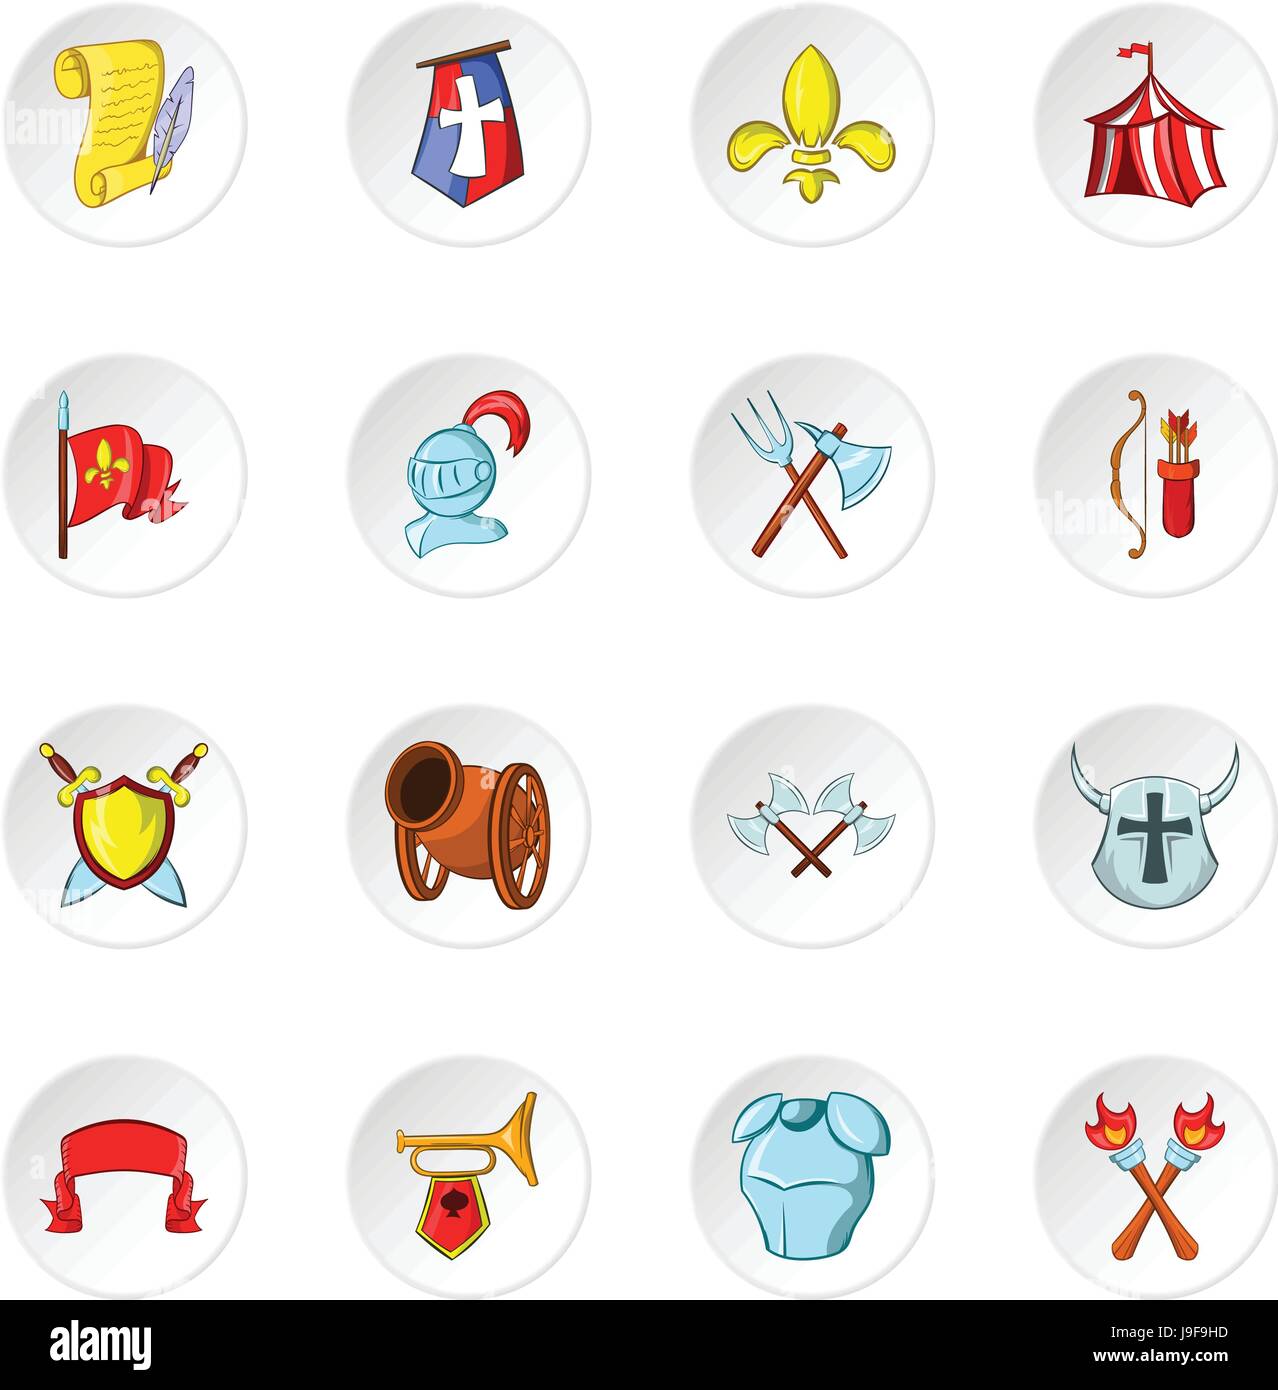 Knight icons, cartoon style Stock Vector